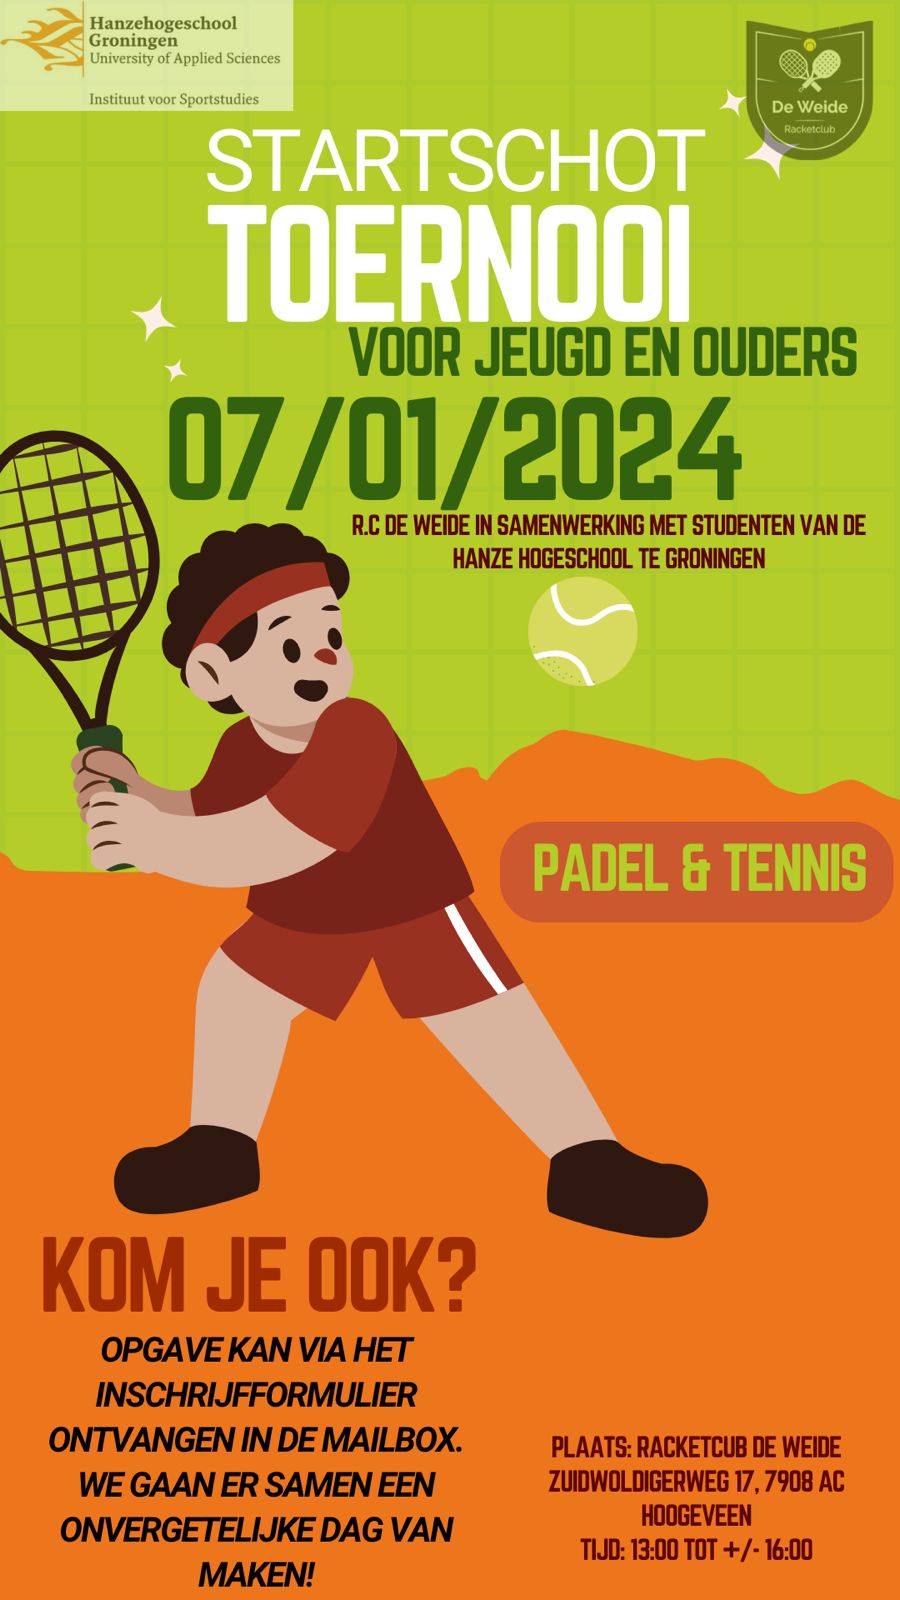 Startschot toernooi tennis & padel voor jeugd en ouders